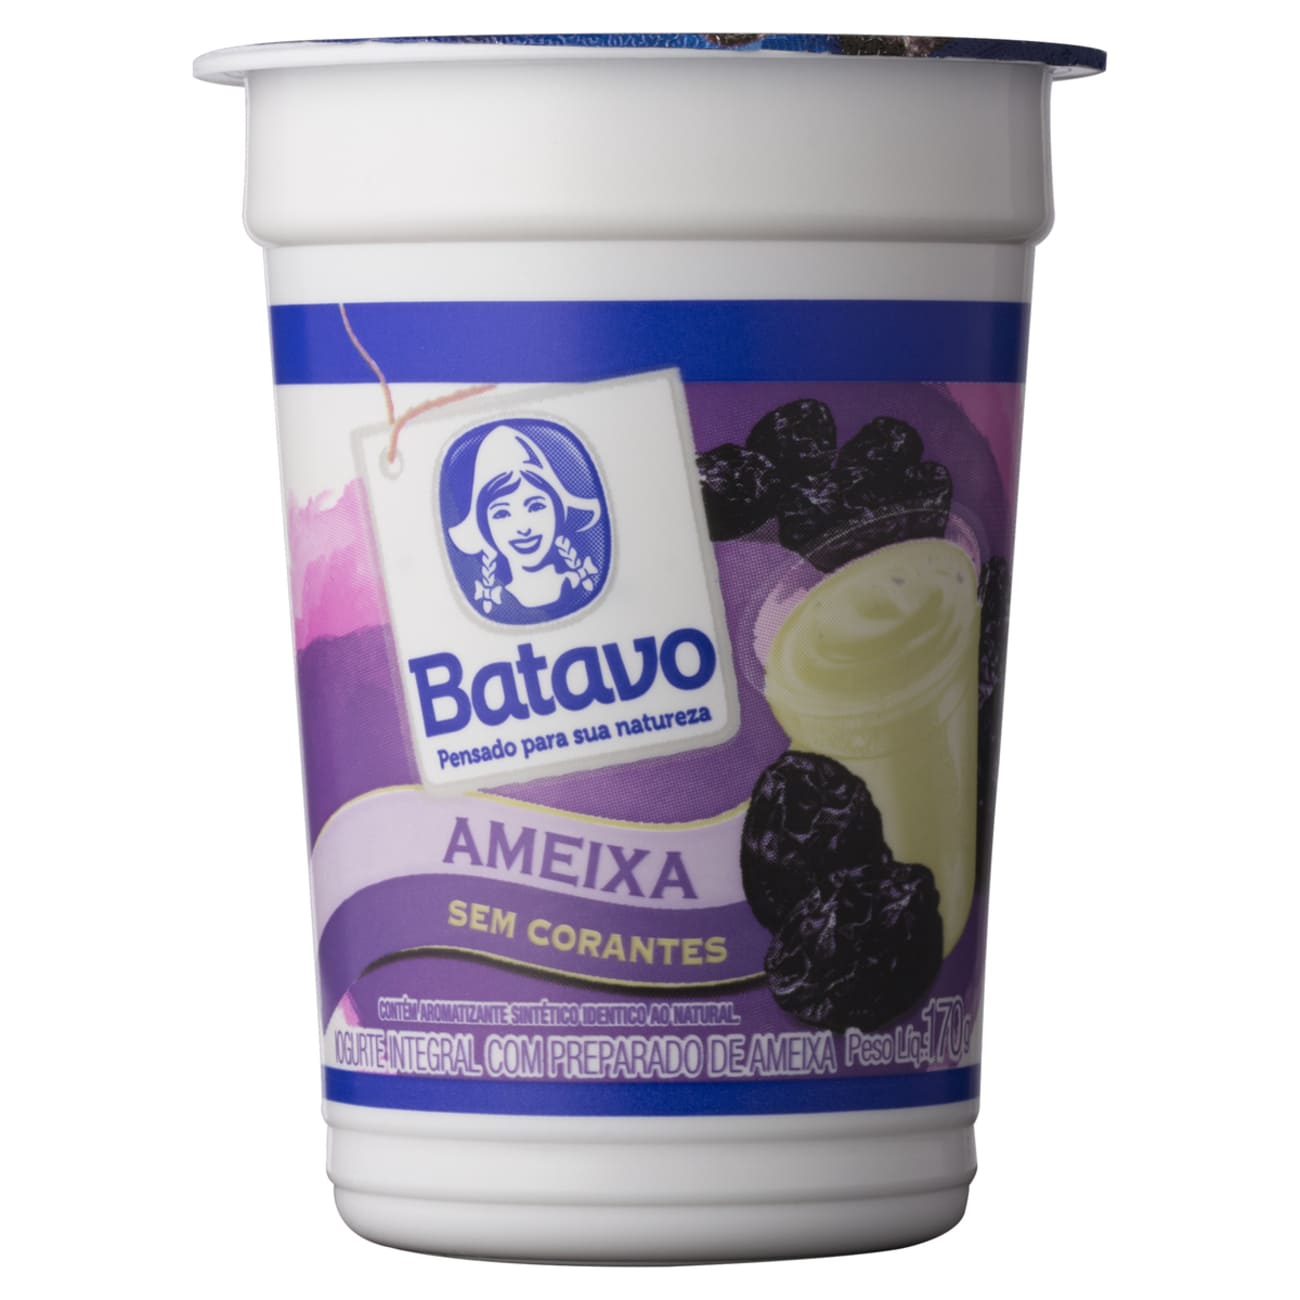 Iogurte Integral com Preparado de Ameixa Batavo Copo 170g